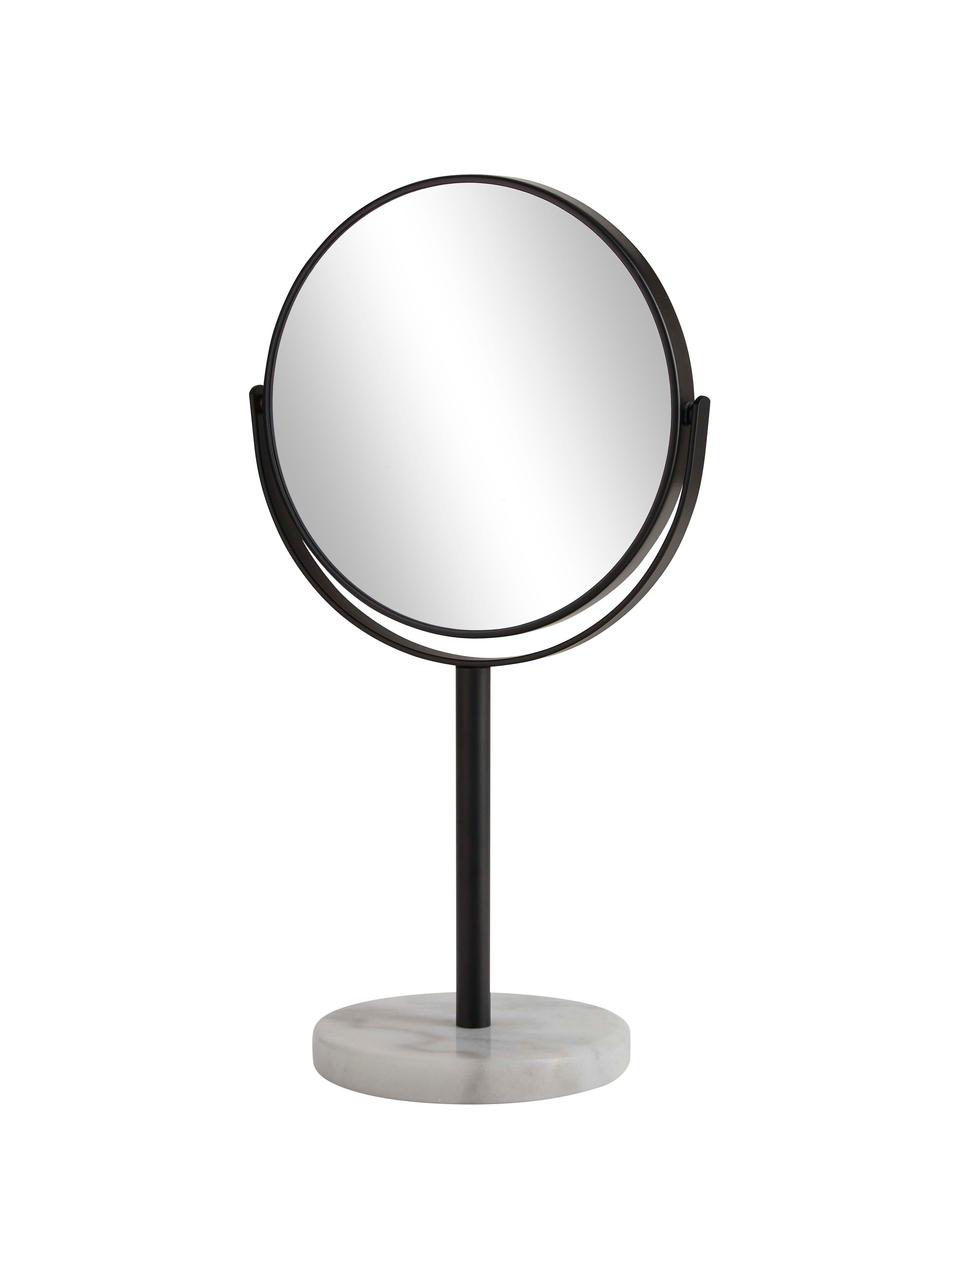 Ronde make-up spiegel Ramona met witte marmeren voet, Lijst: metaal, Voet: marmer, Zwart, wit marmer, Ø 20 x H 34 cm